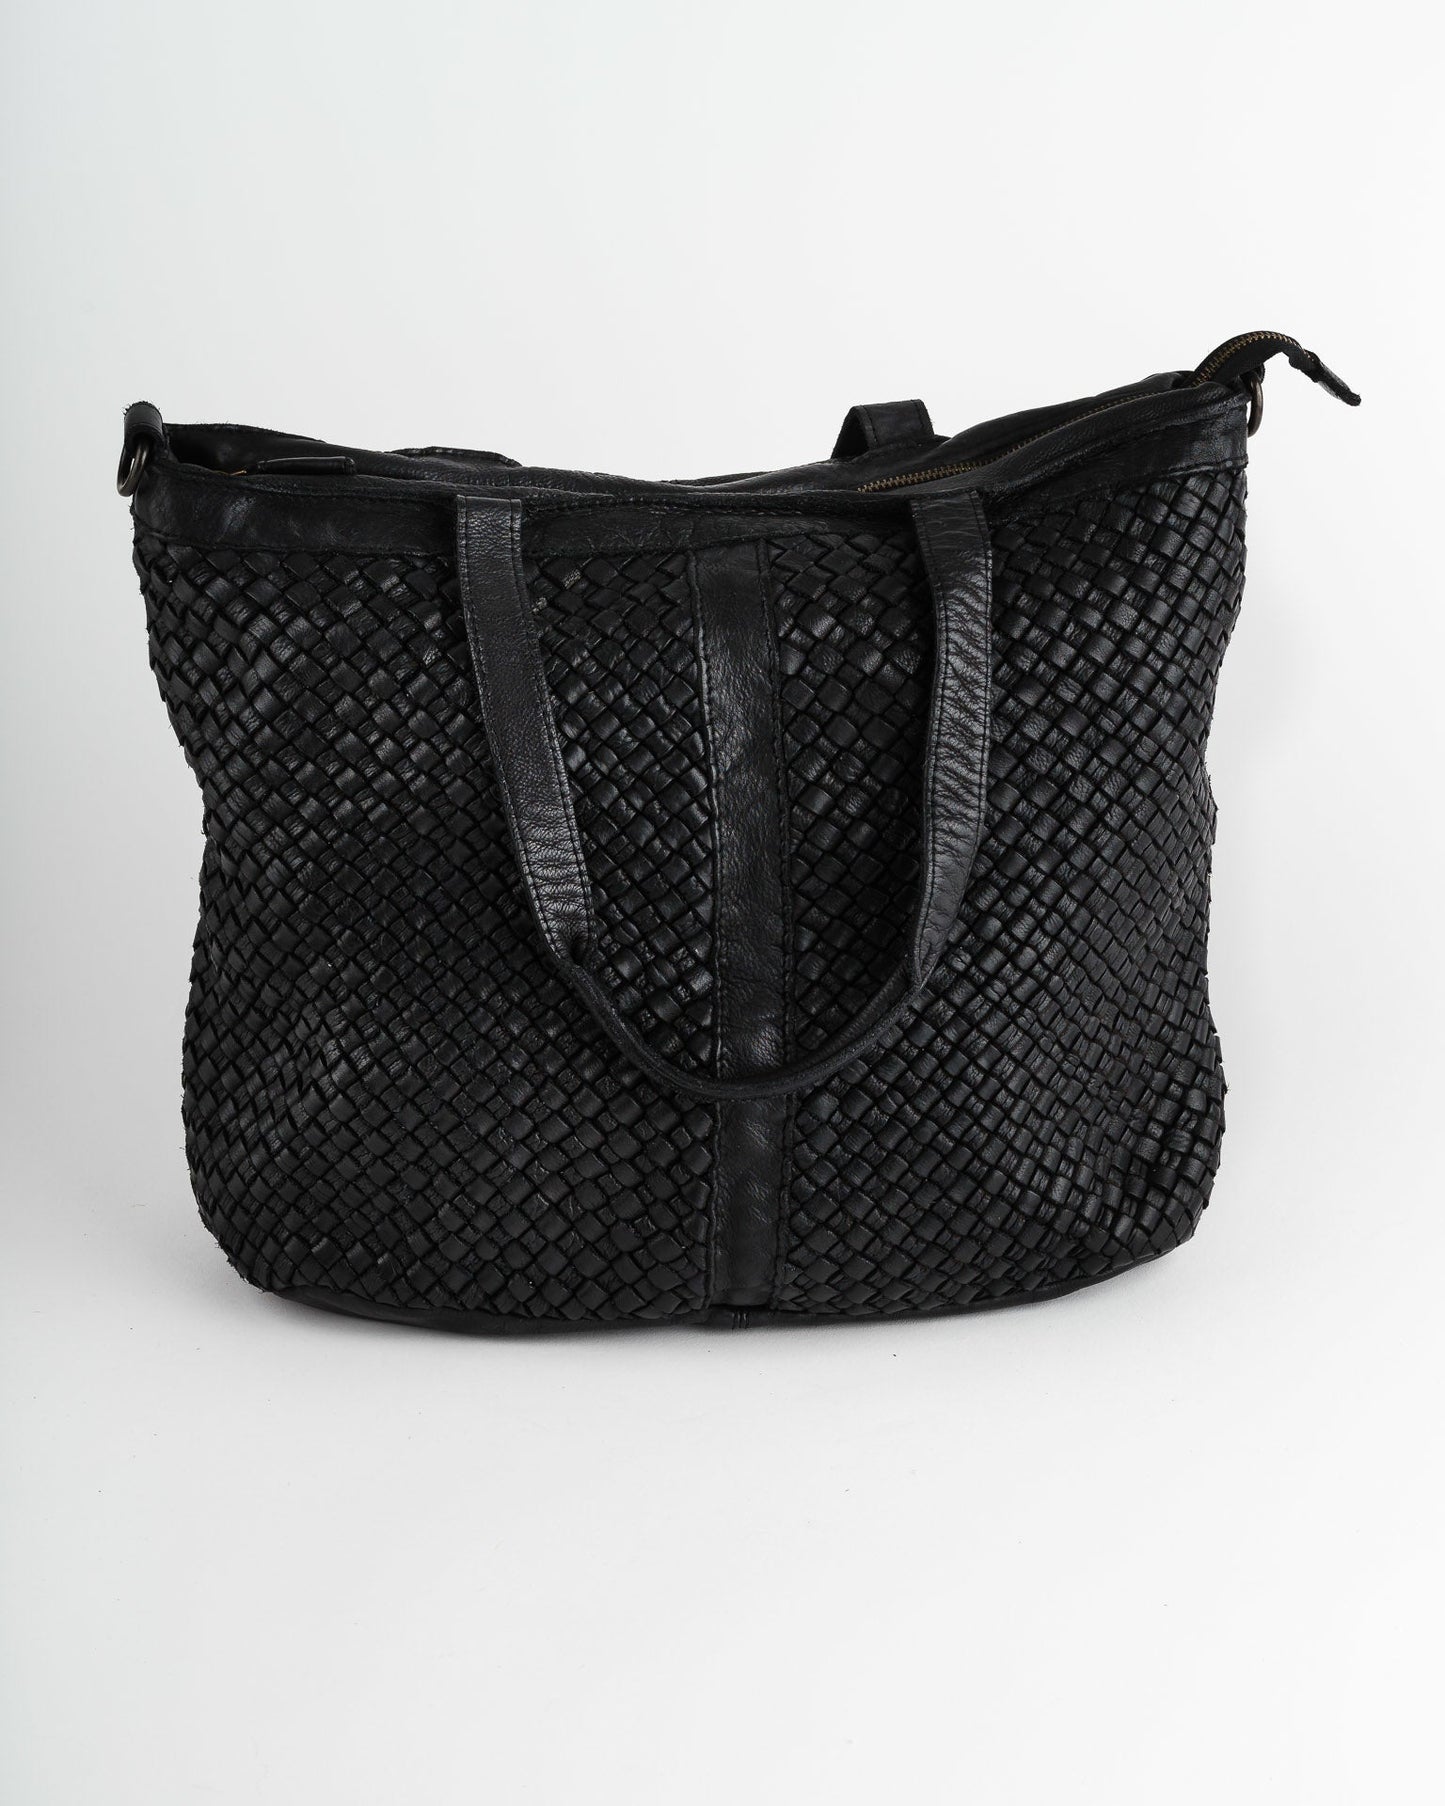 Ebony Leather Traveler Bag - Trades of Hope 